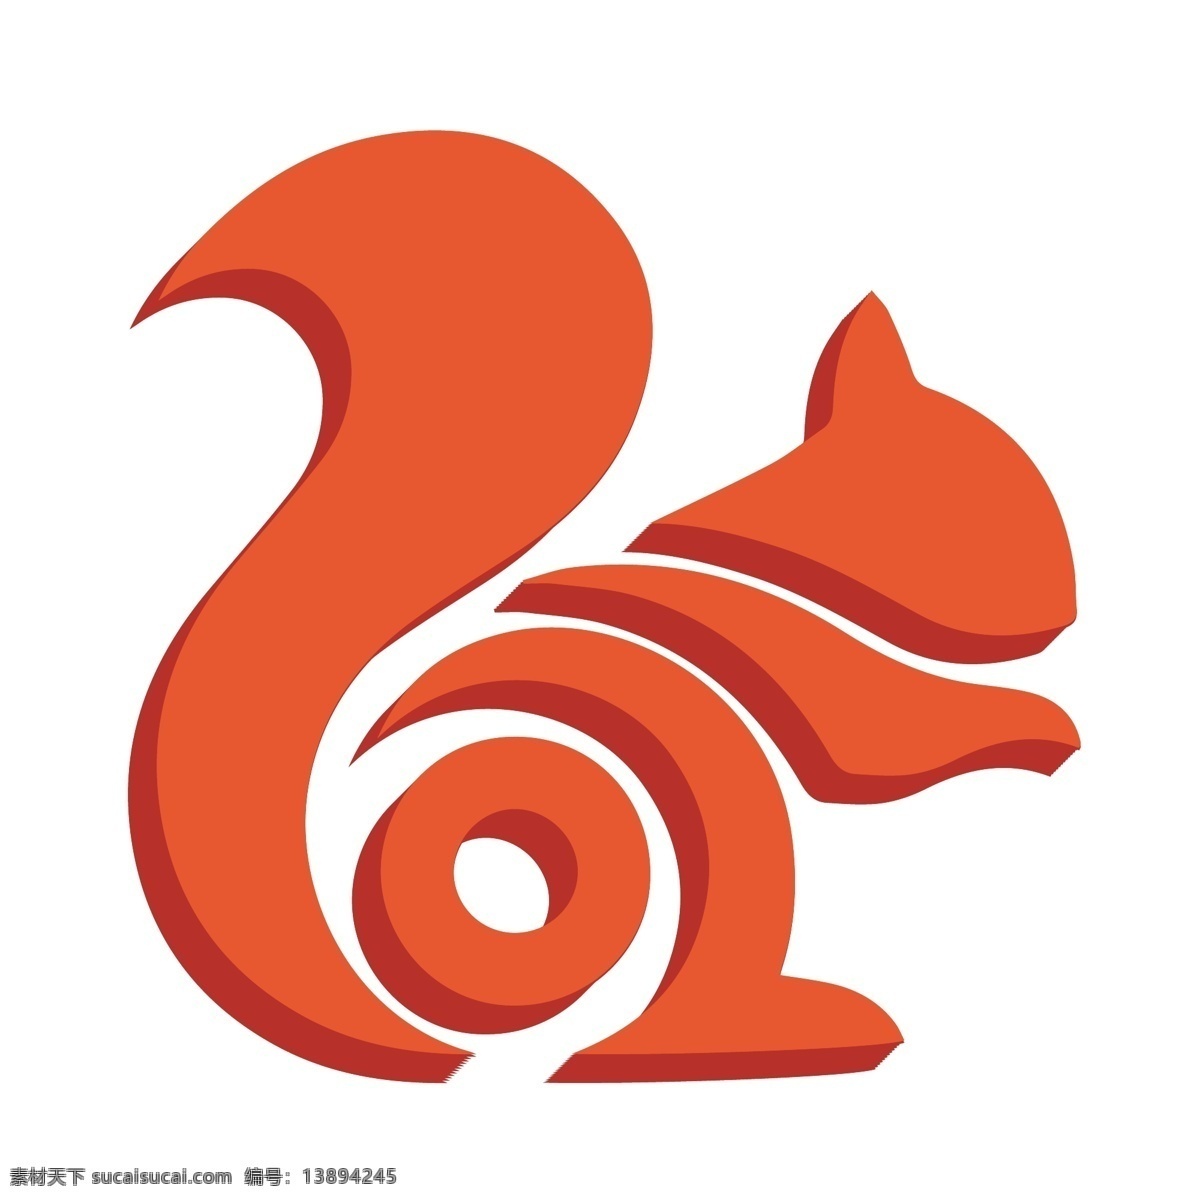 d 橙色 uc 浏览器 logo 图标 uc浏览器 企业logo 立体 2.5d 创意 扁平图标 手绘 软件 logo图标 千库原创 免抠图png